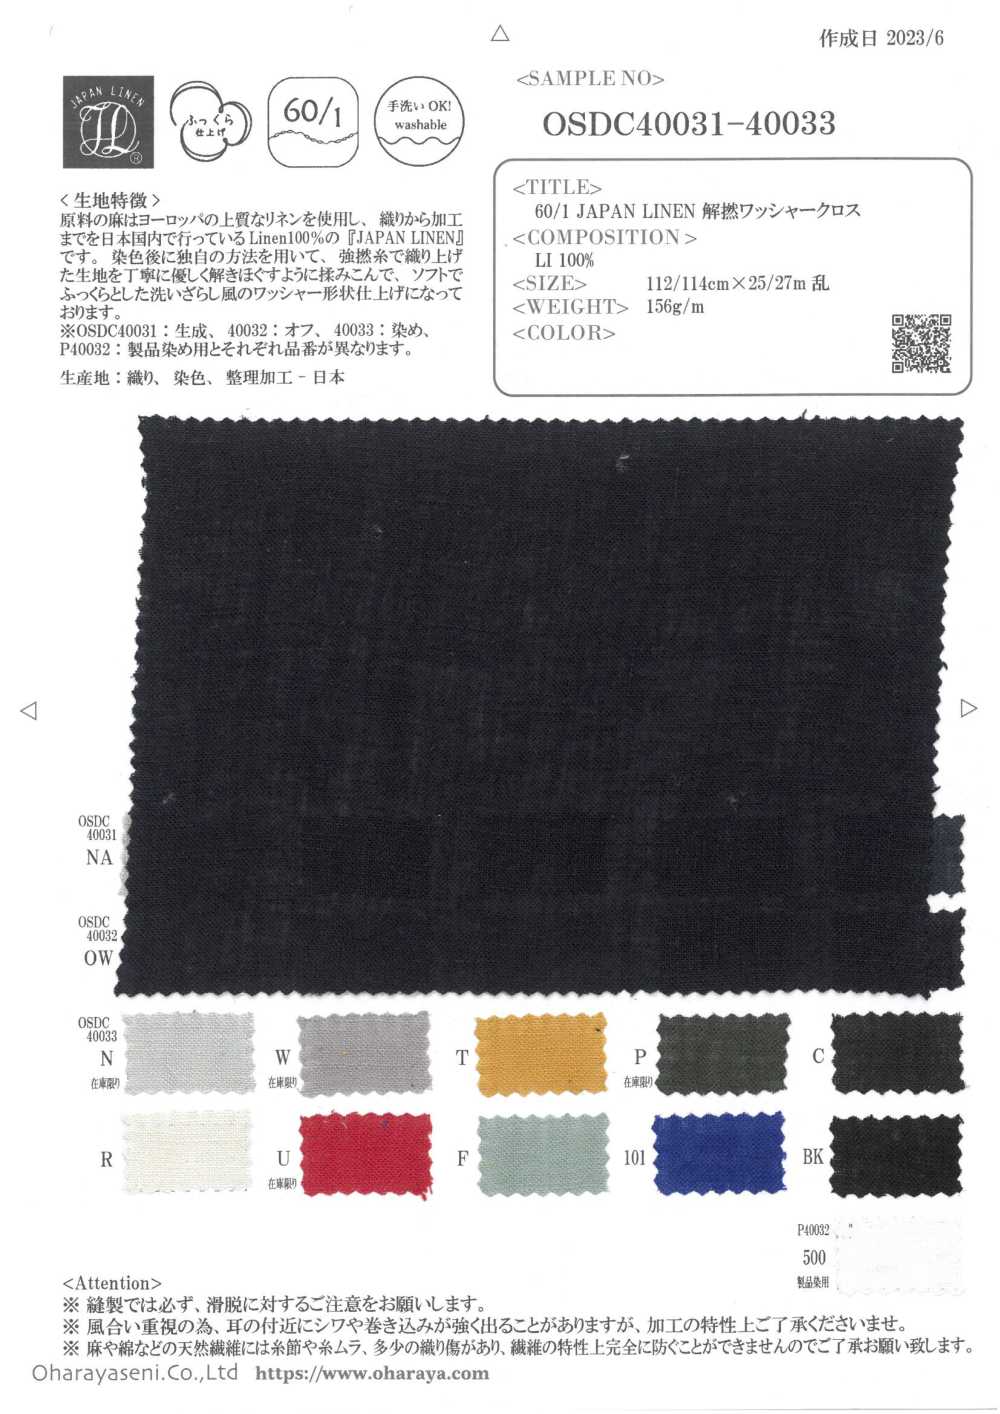 OSDC40032 60/1 JAPAN LINEN 解撚ワッシャークロス (オフホワイト)[生地] 小原屋繊維